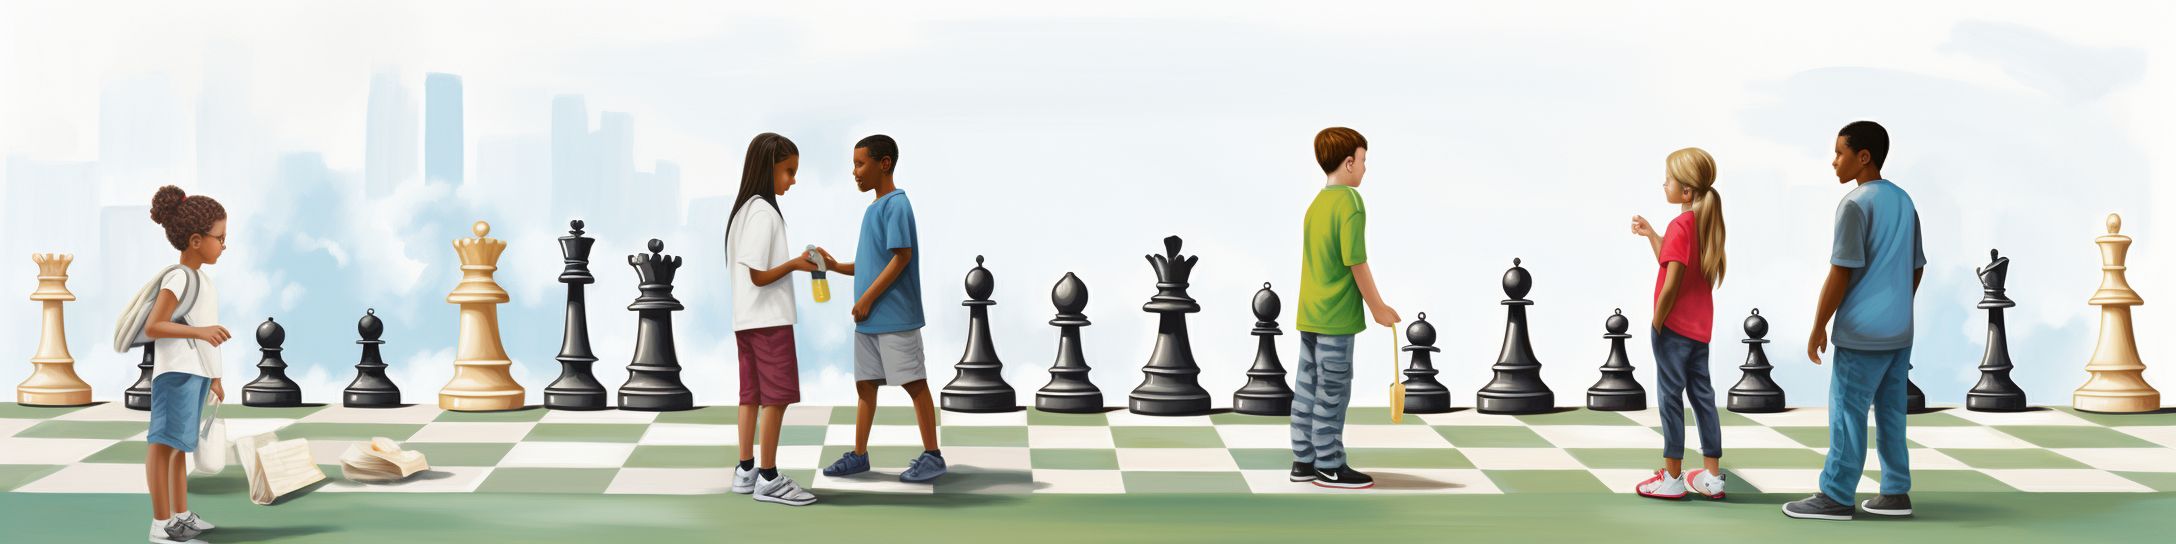 Choisir la taille de son jeu d’échecs en fonction de l'âge des joueurs